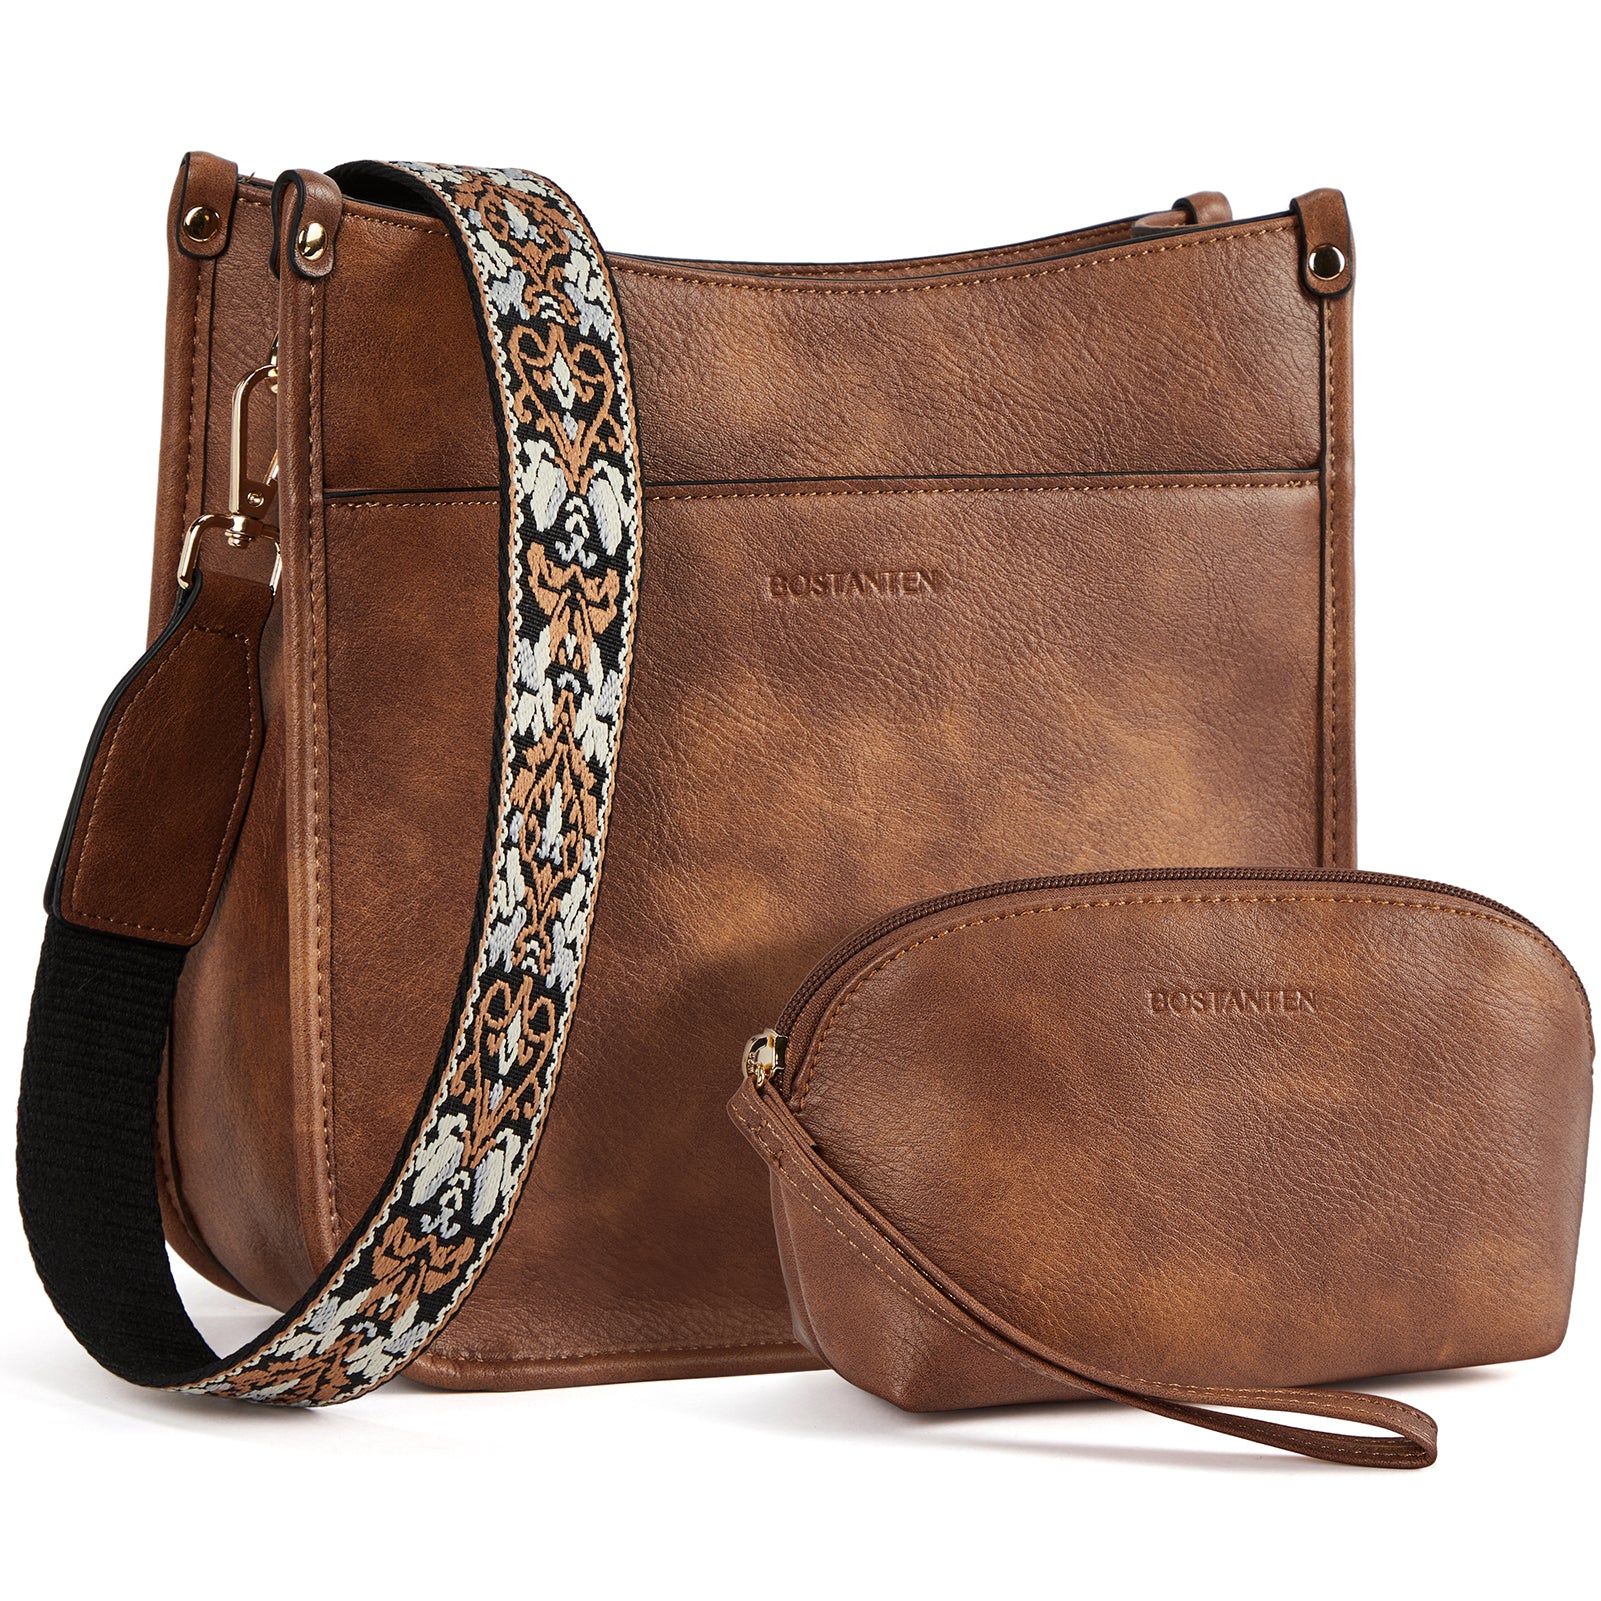 Multifunctional Designer Leather Crossbody Bag For Women —— BOSTANTEN